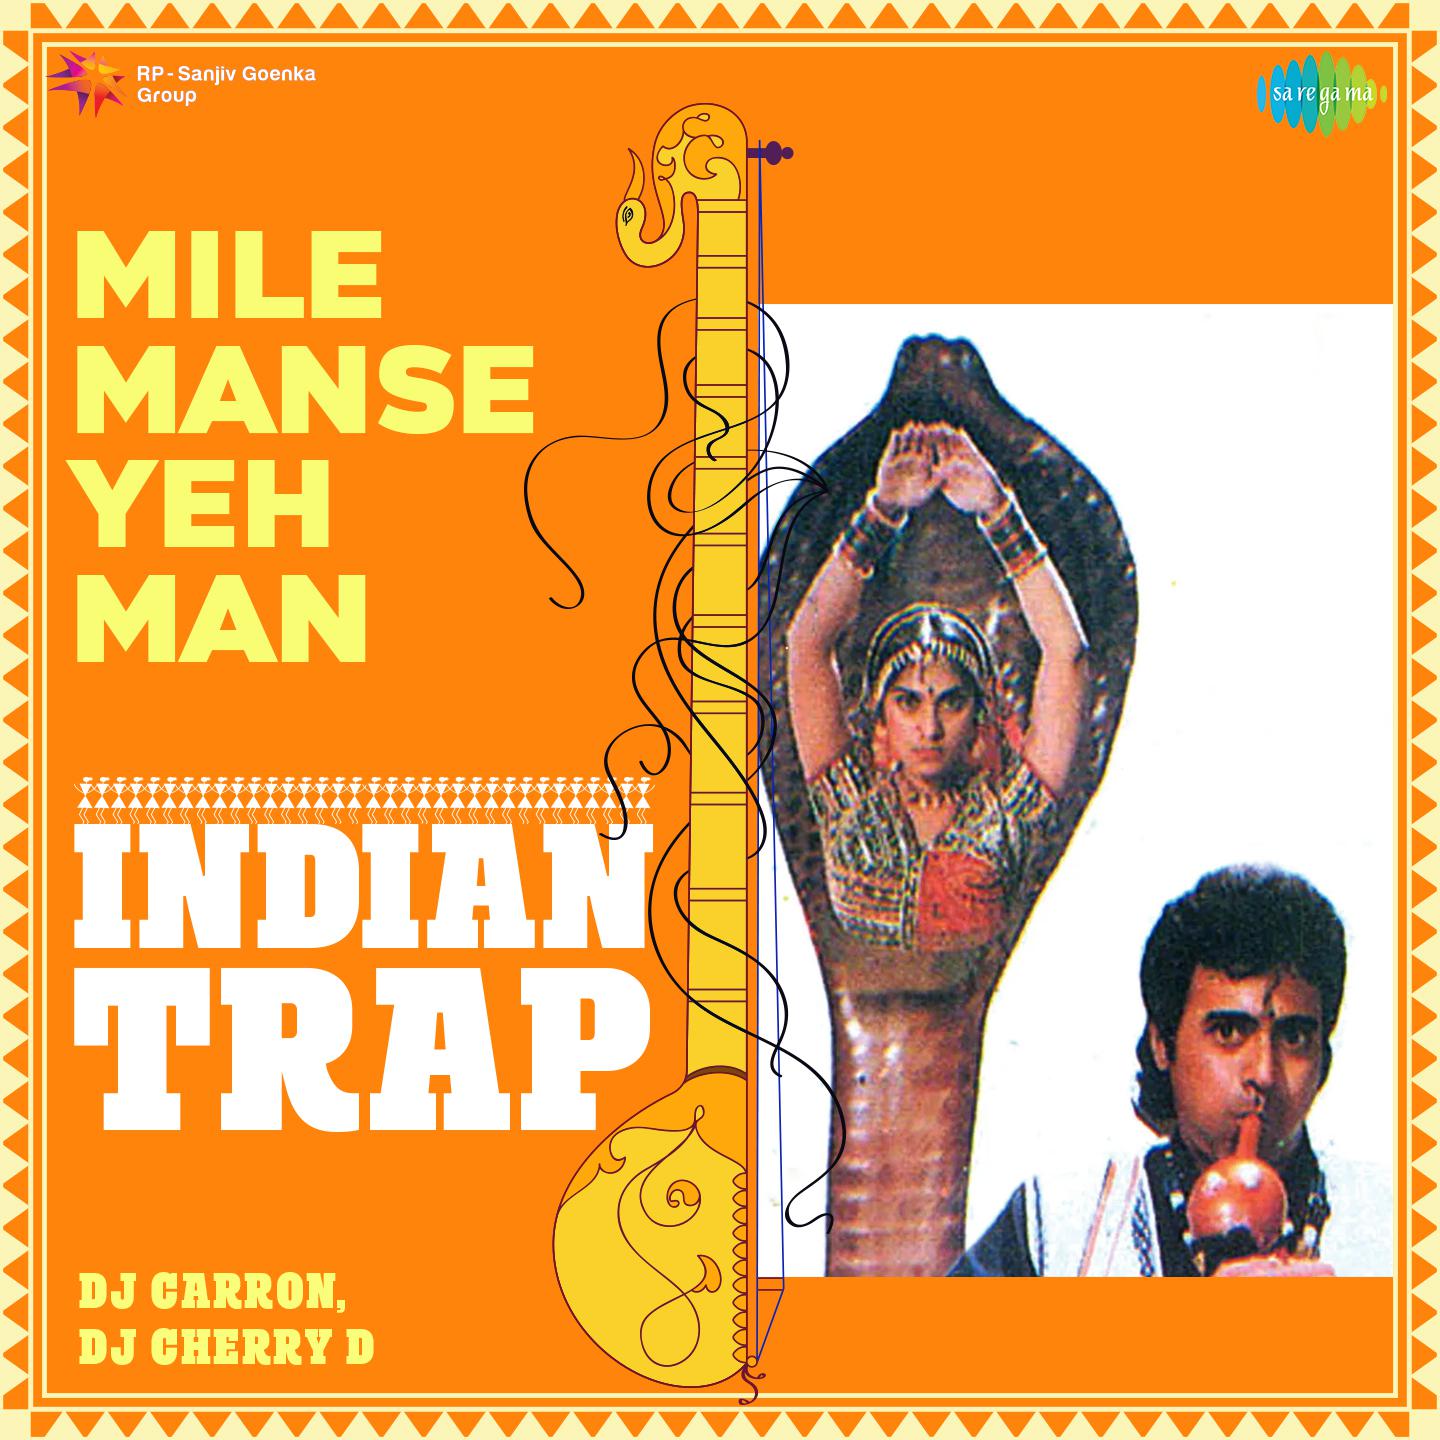 DJ Carron - Mile Manse Yeh Man - Indian Trap